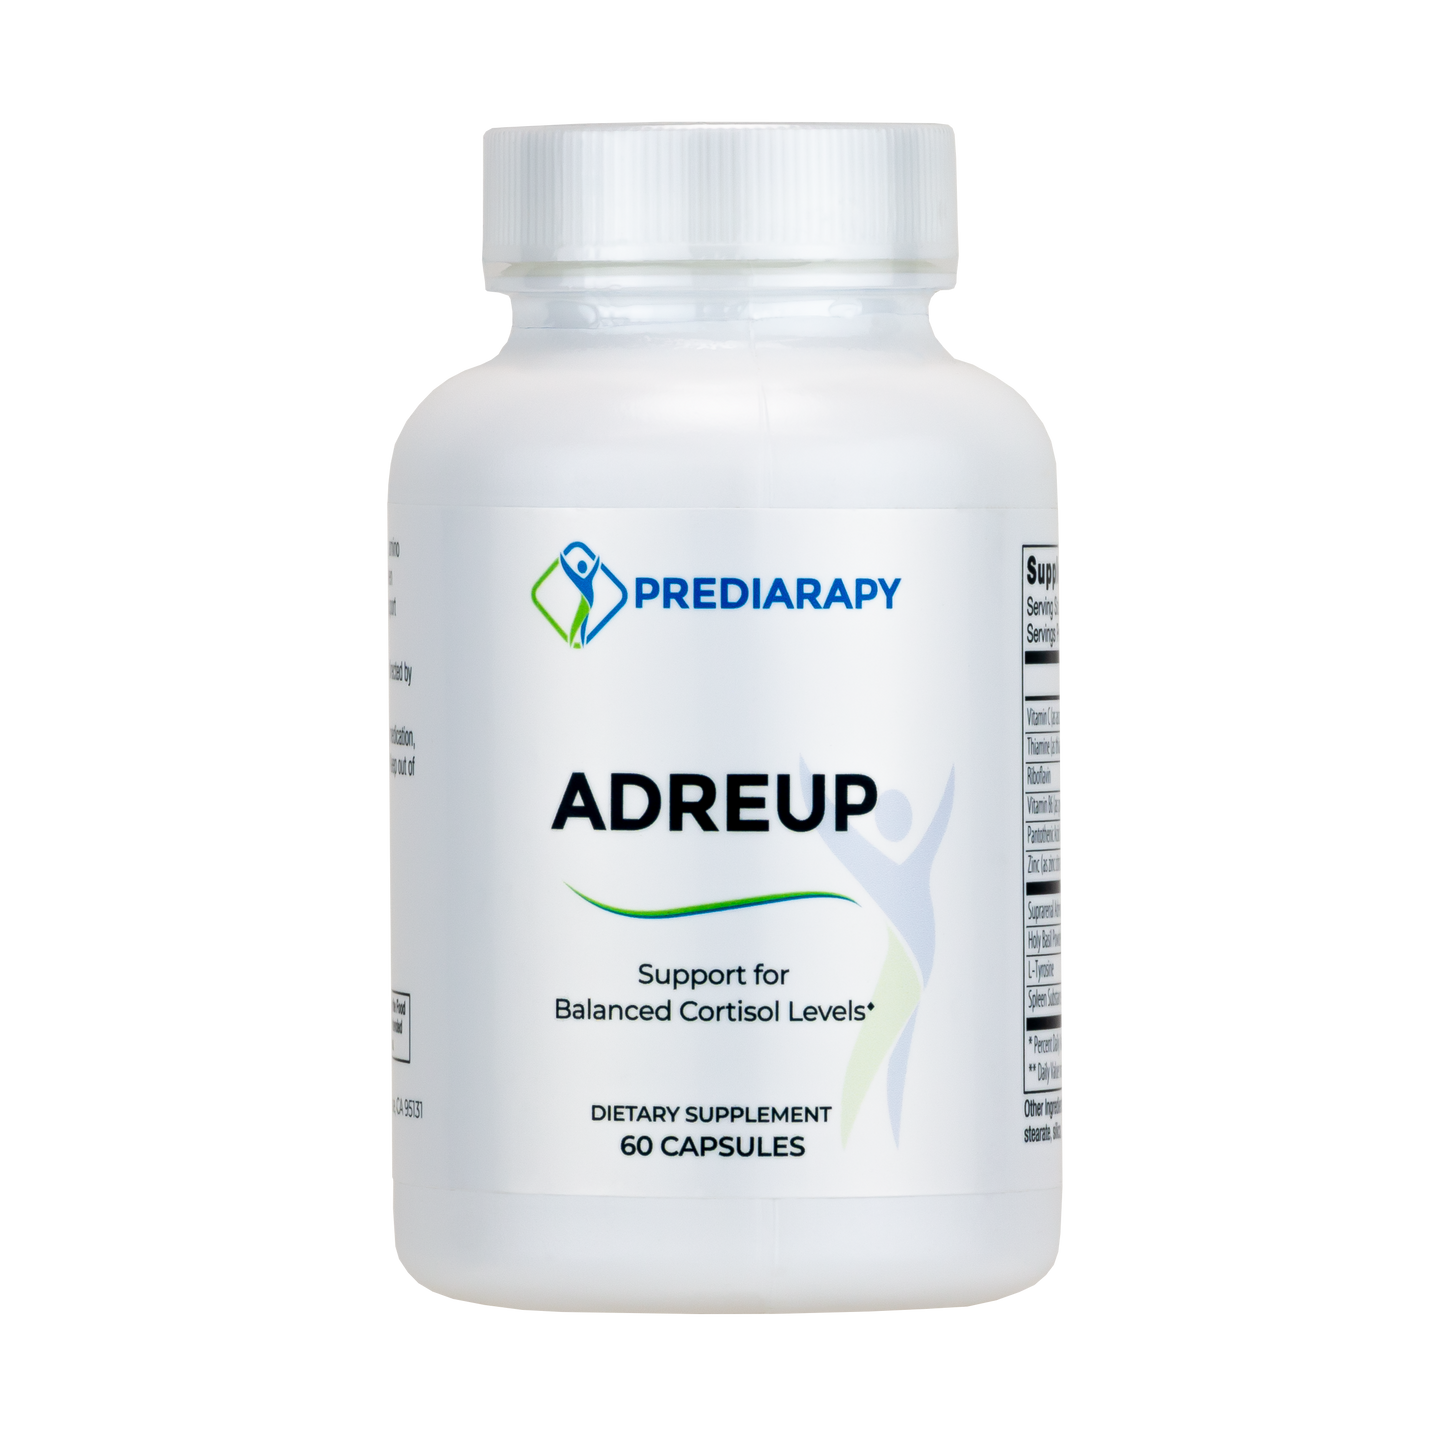 Stress Essentials Adrenal Renew (AdreUp)